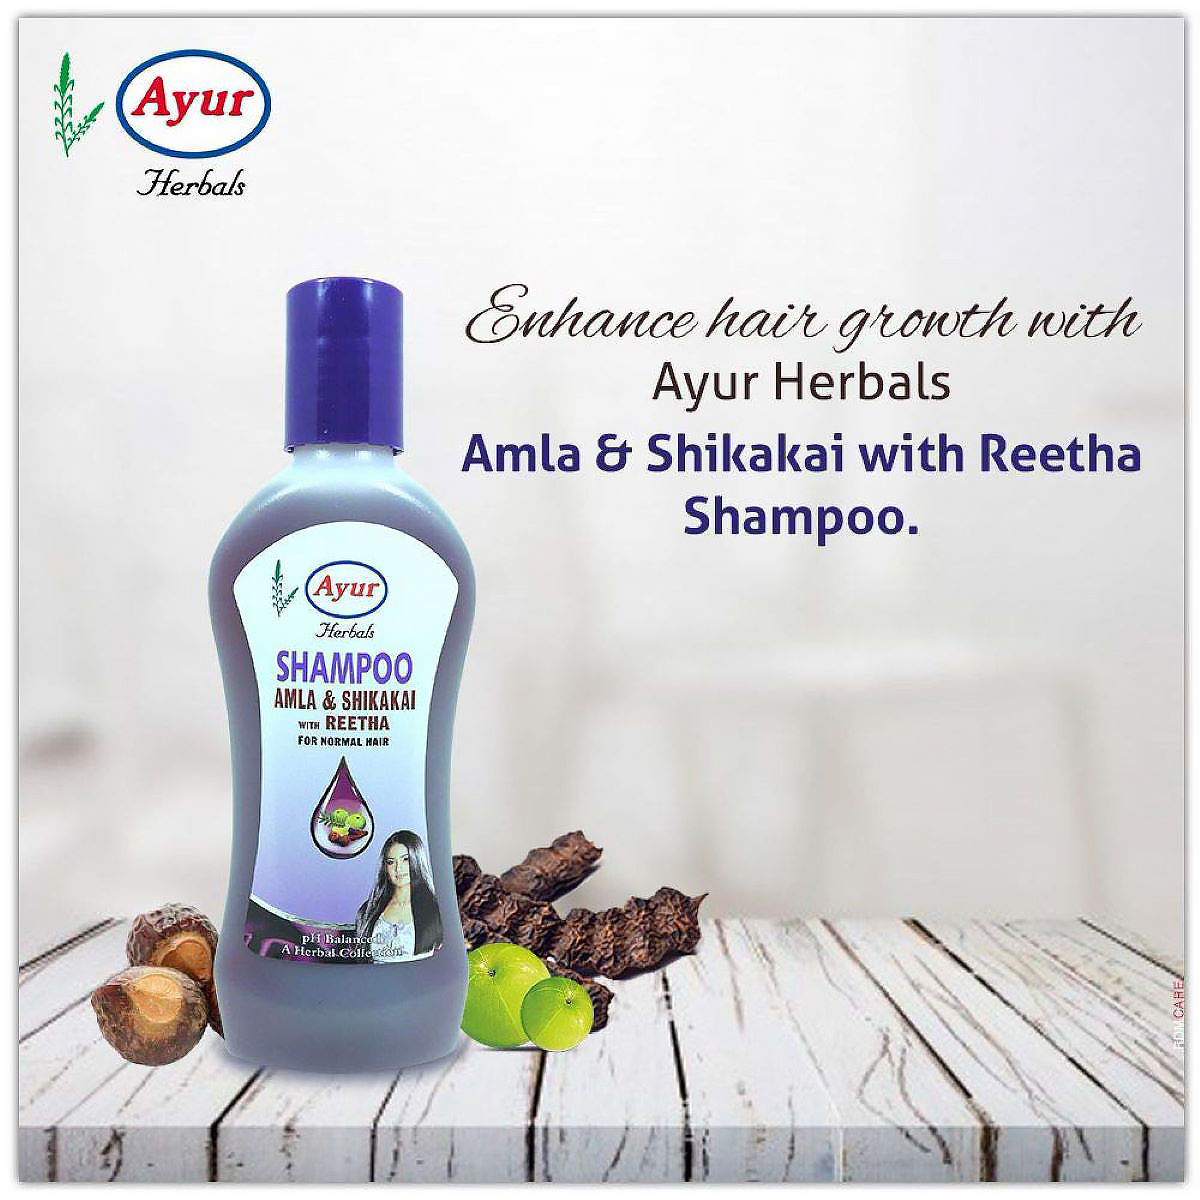 Ayur Herbal Amla & Shikakai With Reetha Shampoo, 200 ml, Pack of 1 